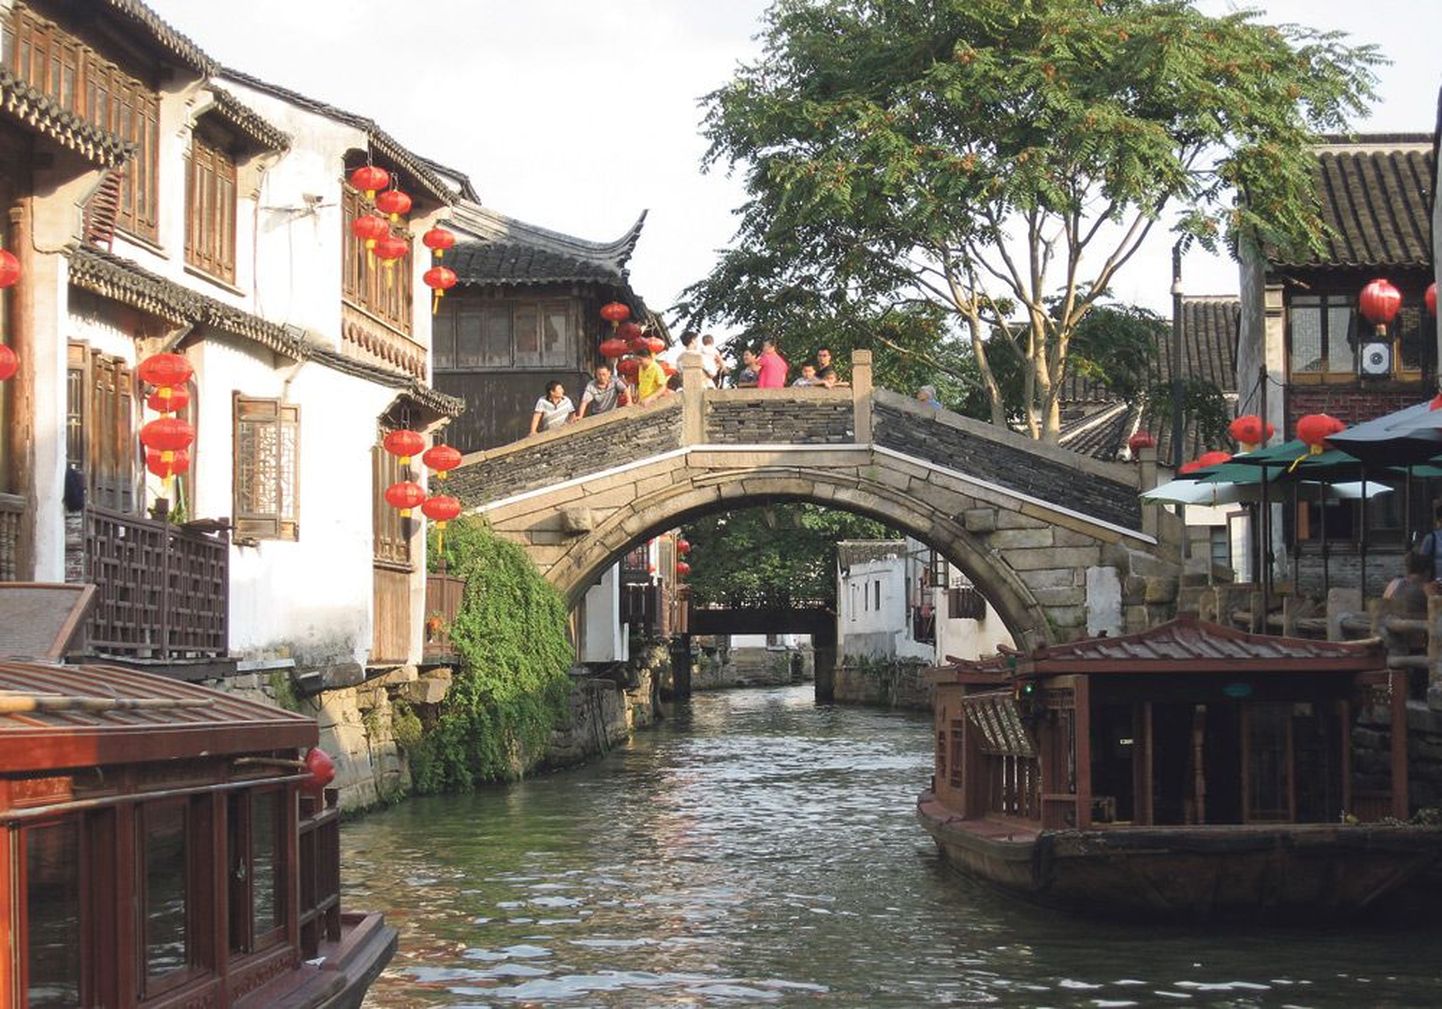 Сучжоу пронизан сетью каналов, прогулка по которым — одно из самых необычных впечатлений от поездки в Китай.